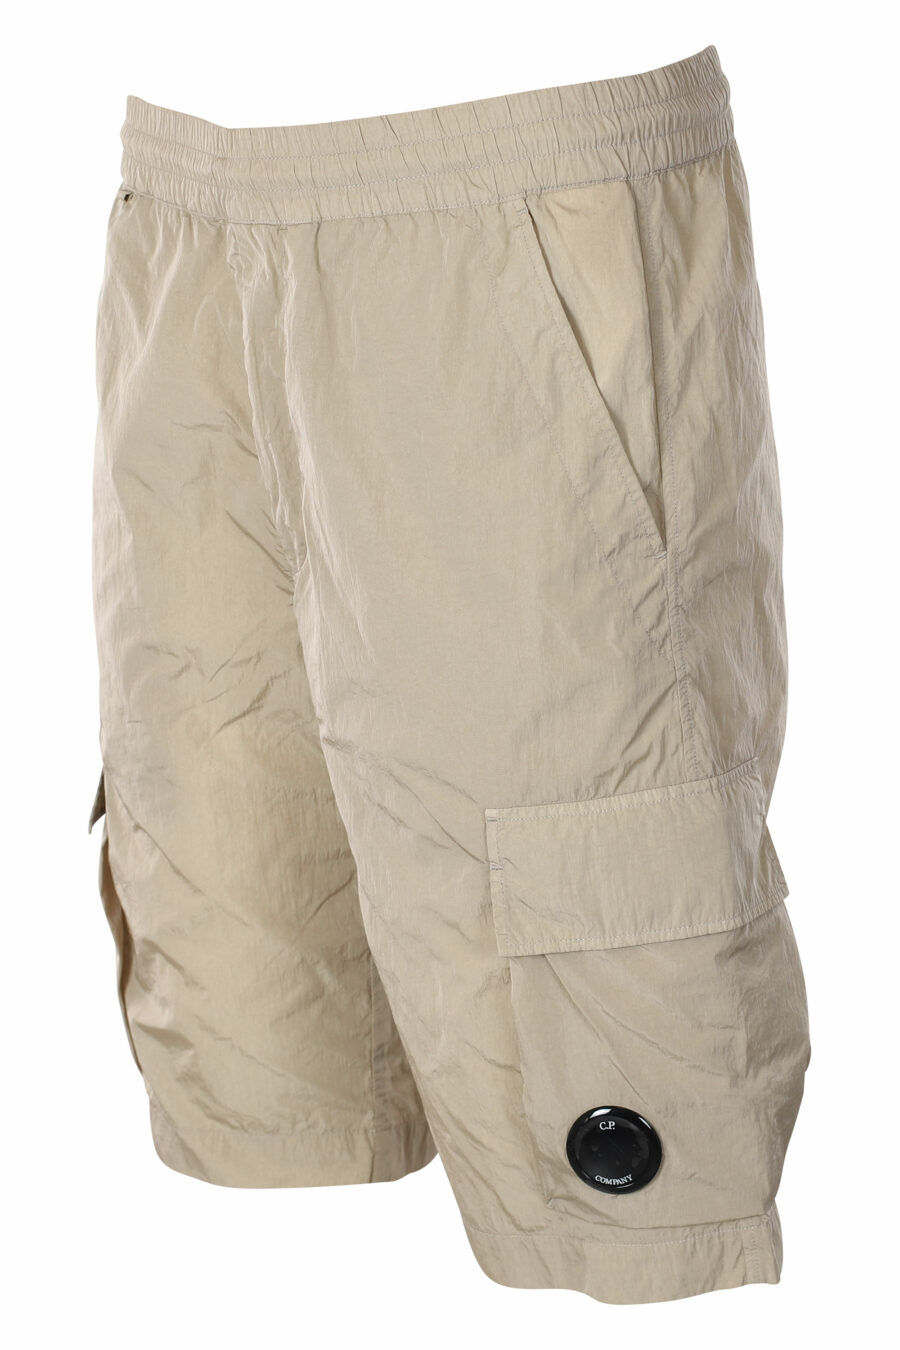 Pantalón corto midi beige estilo cargo con minilogo circular - IMG 9544